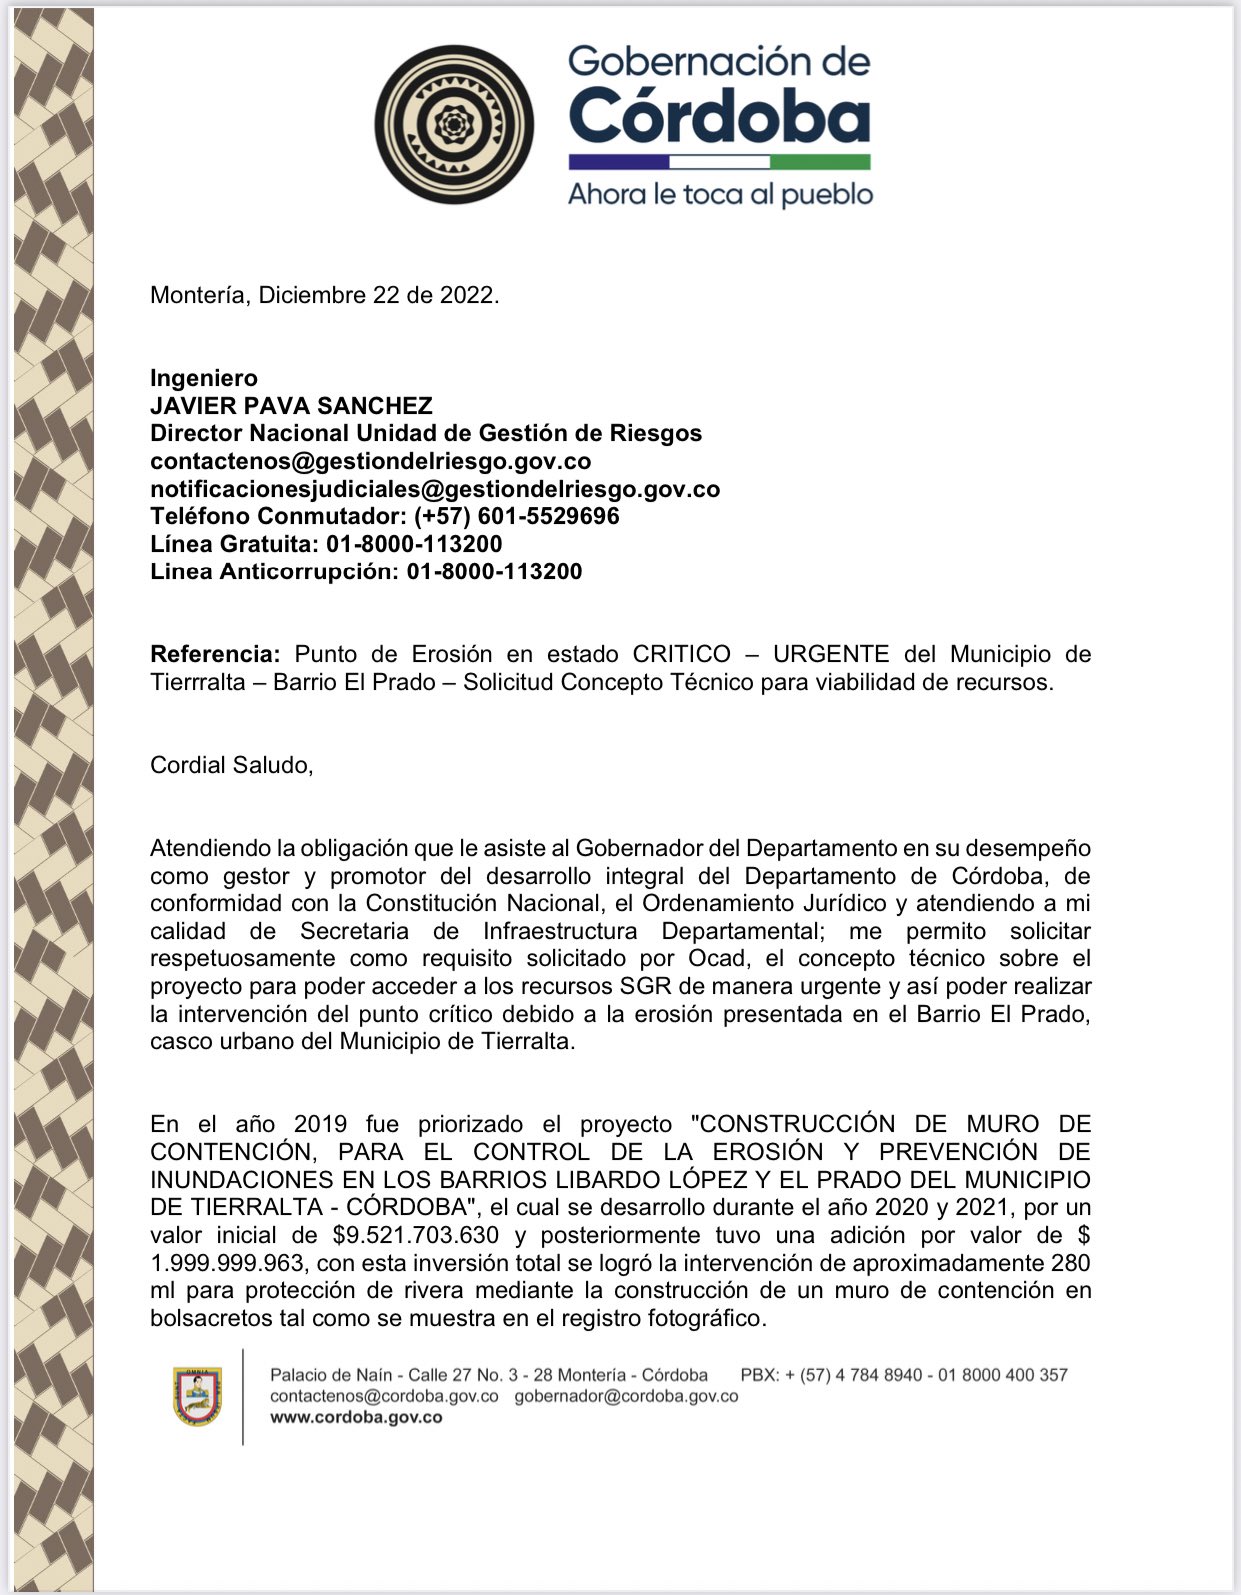 El mensaje de urgencia del gobernador de Córdoba a la UNGRD